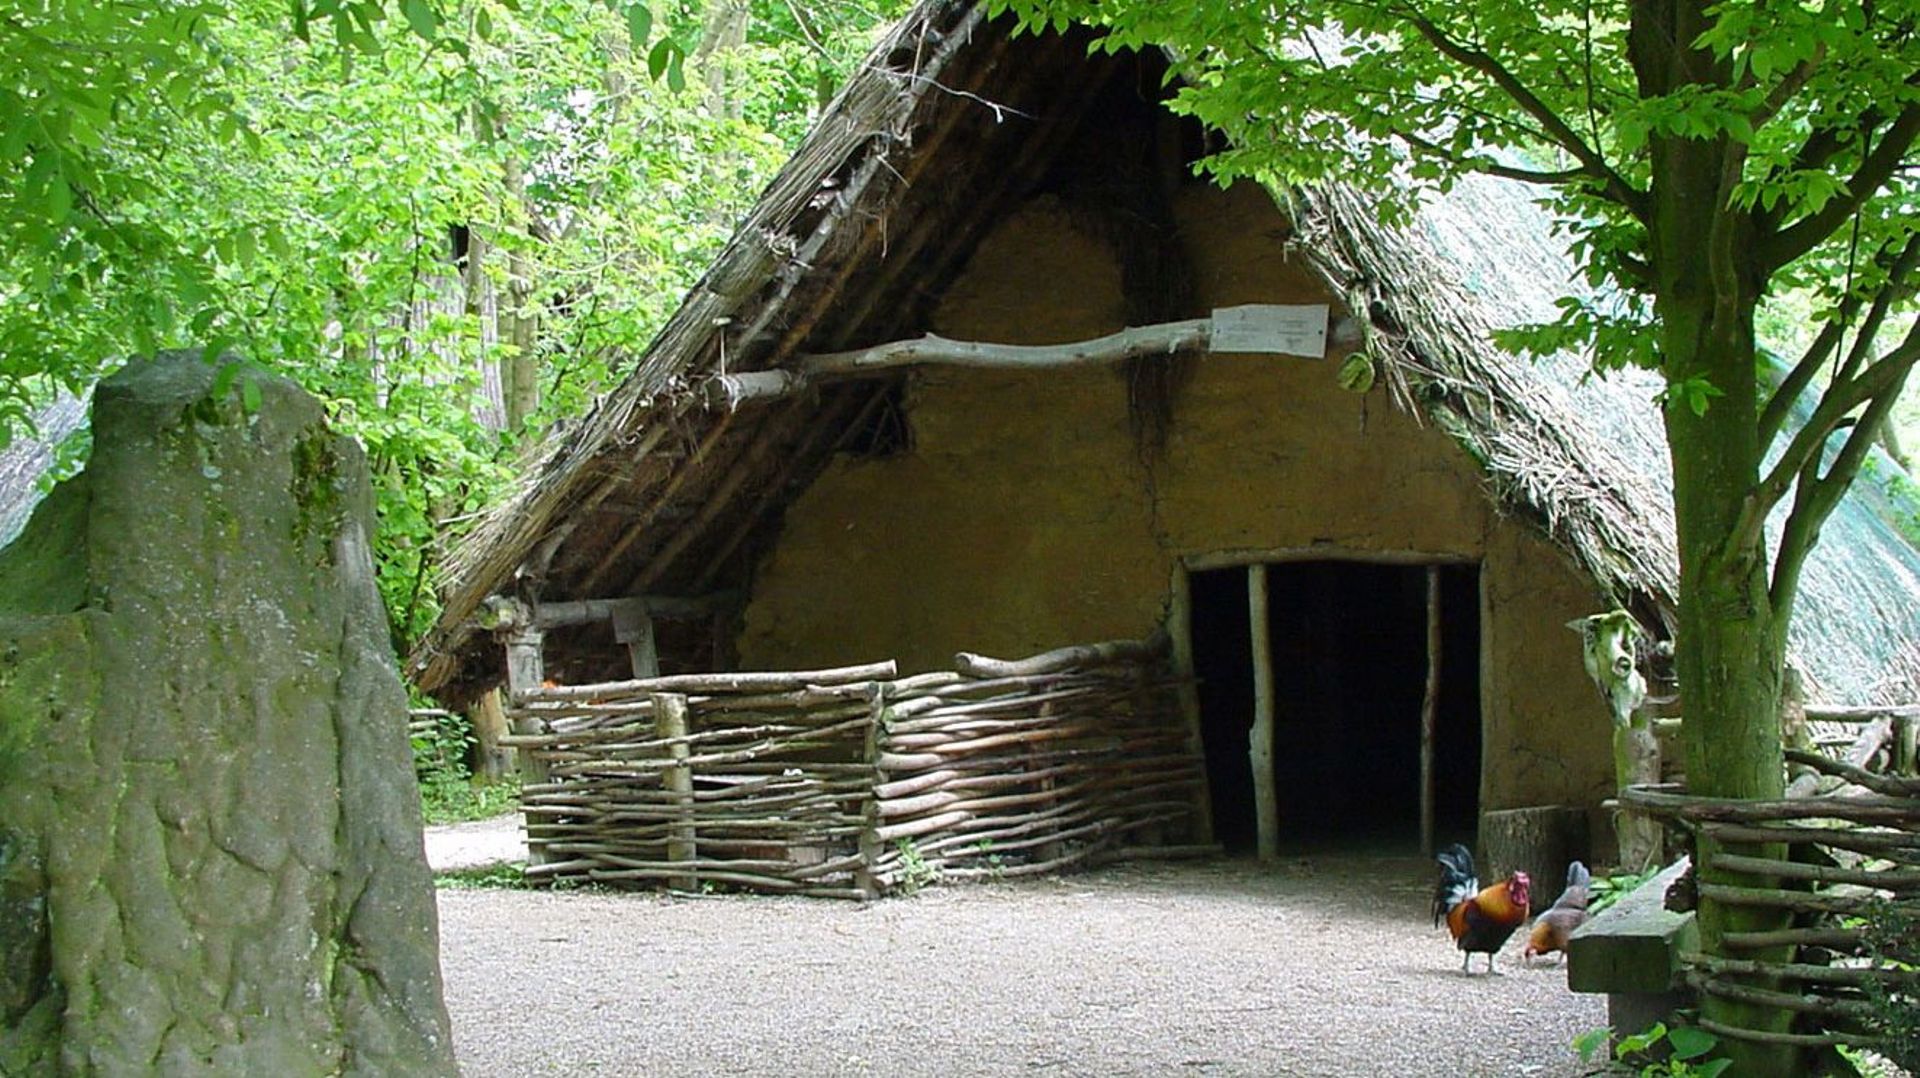 Maison néolithique qui accueille le dimanche, des artisans au travail.